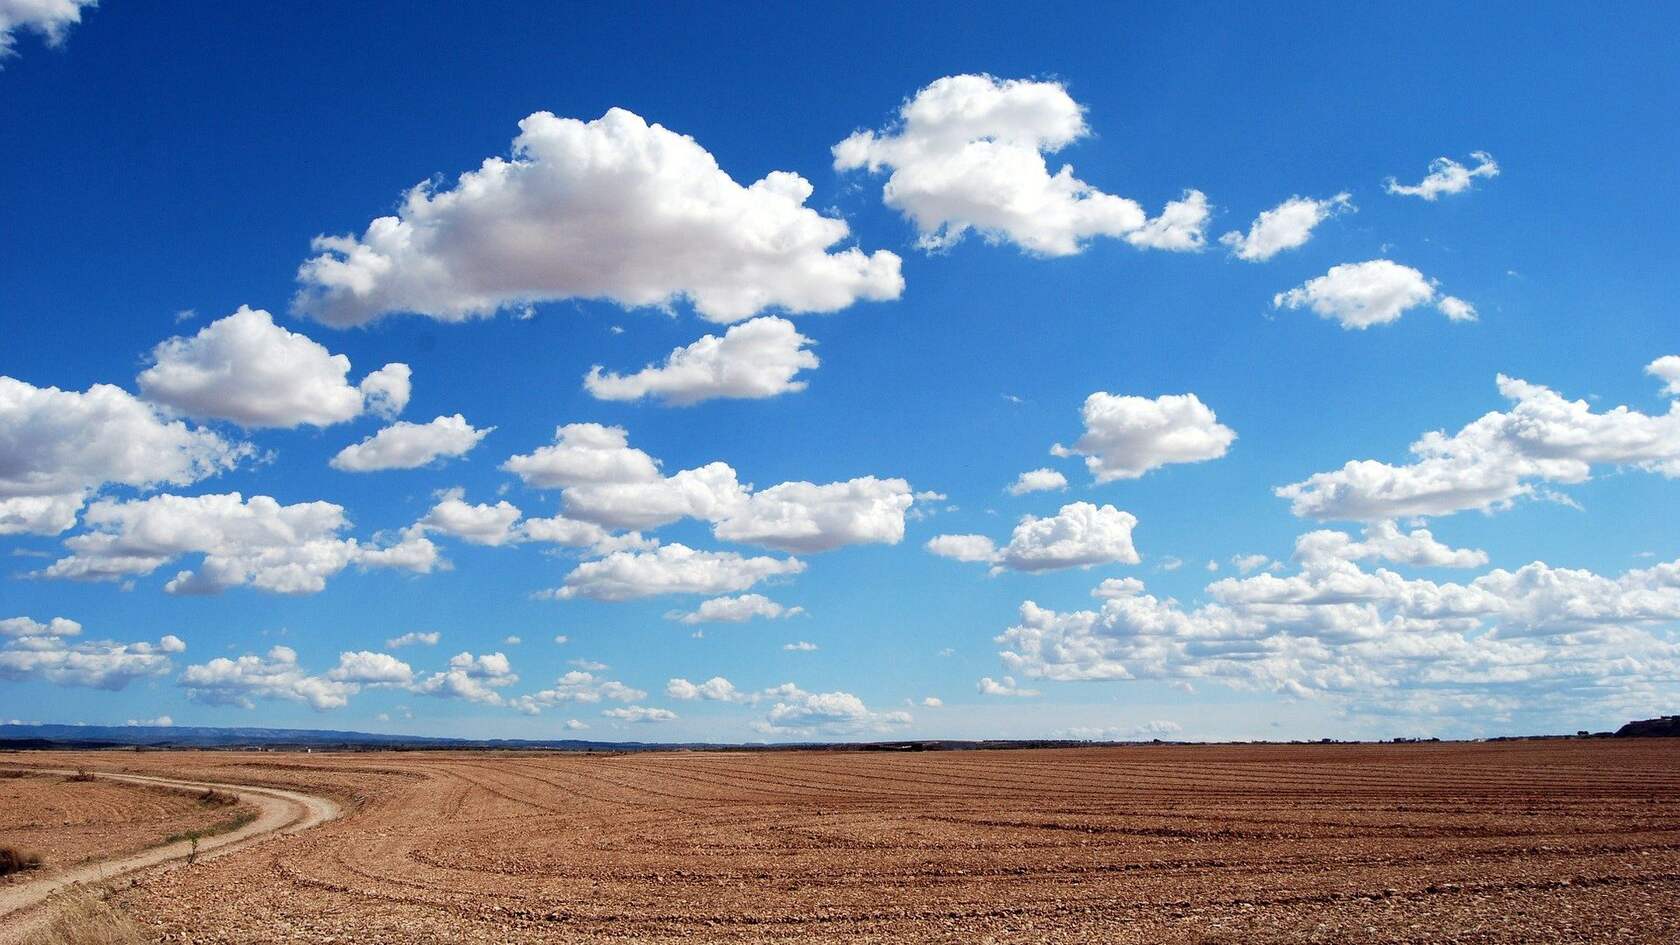 蓝天，白云，草原，田地，村庄，让人一看就心情舒畅的原野风光壁纸图片套图1